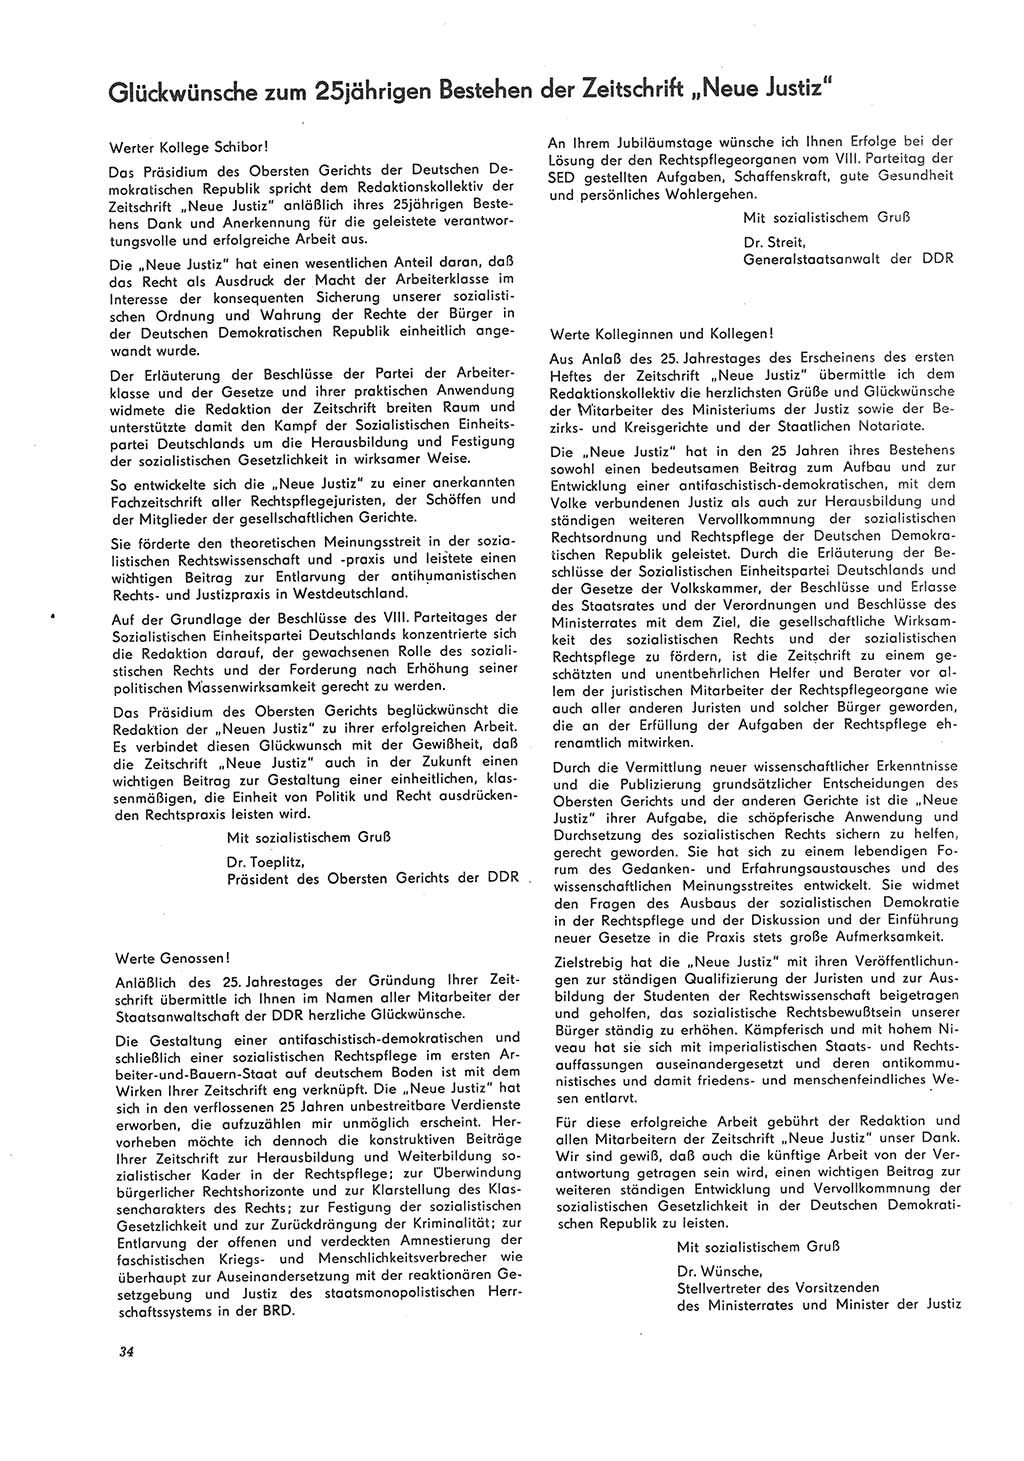 Neue Justiz (NJ), Zeitschrift für Recht und Rechtswissenschaft [Deutsche Demokratische Republik (DDR)], 26. Jahrgang 1972, Seite 34 (NJ DDR 1972, S. 34)